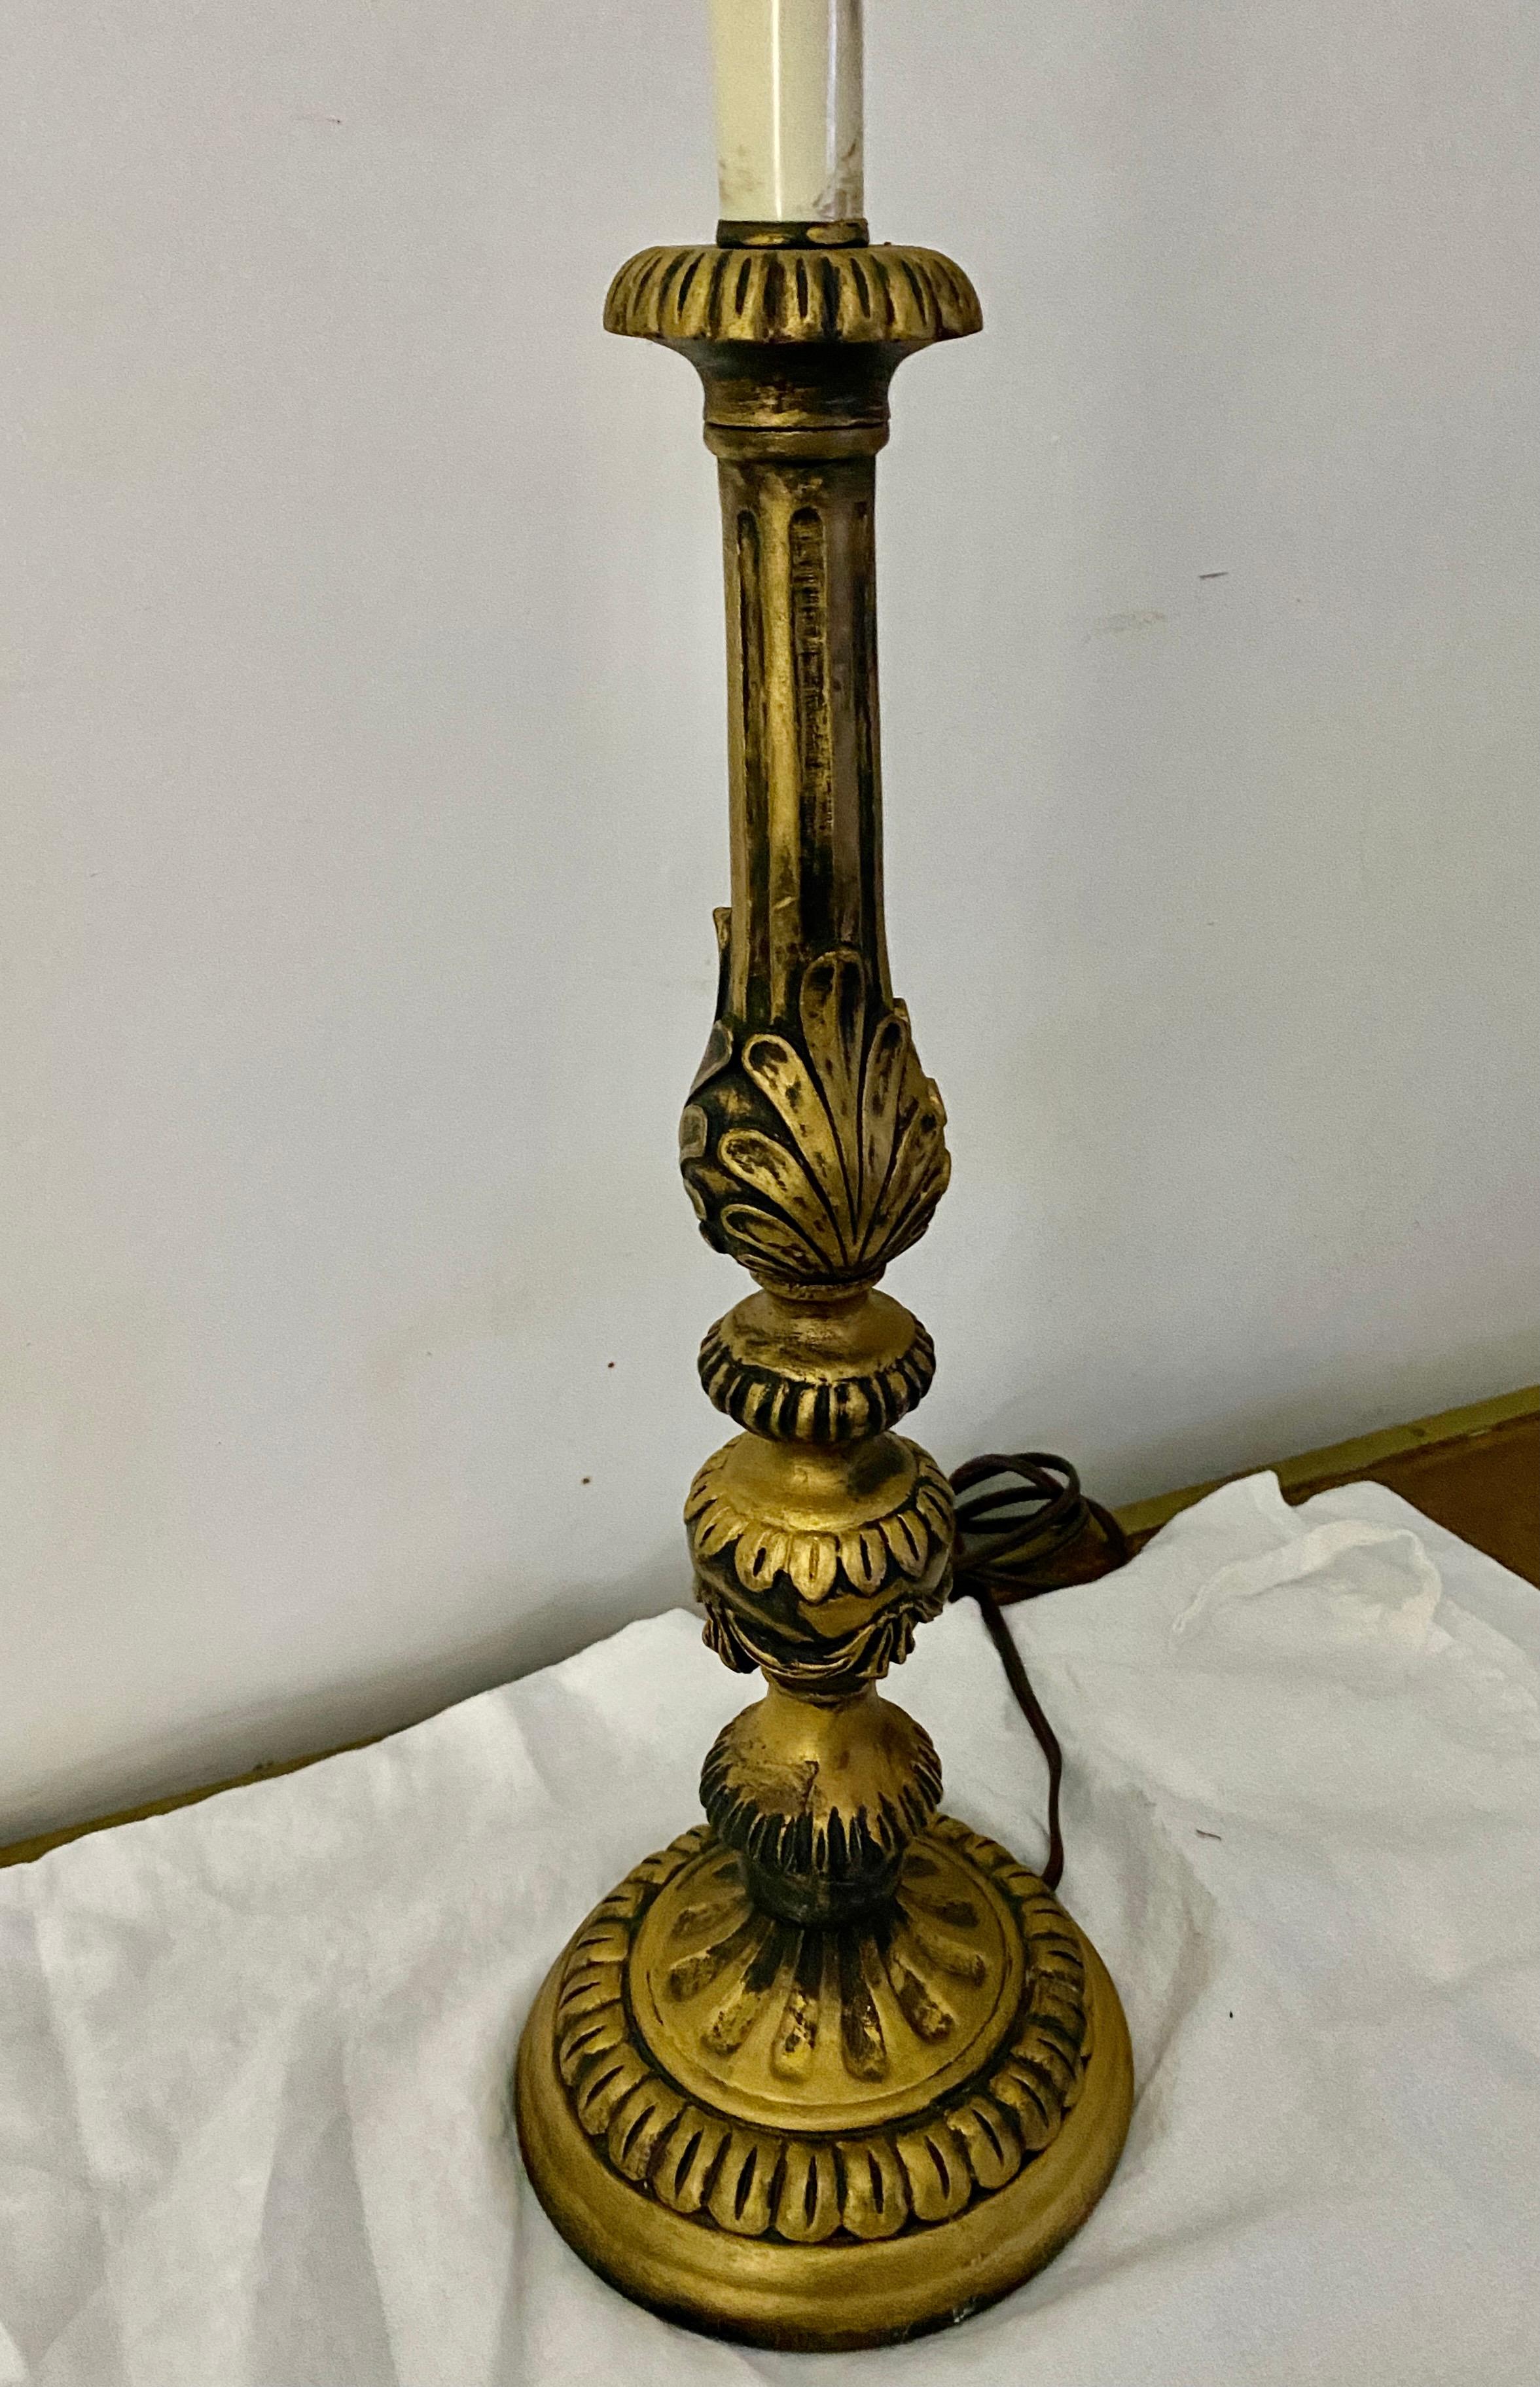 Eine wunderbare italienische Tischlampe im Barockstil aus vergoldetem Holz ist eine wunderbare Ergänzung für jeden Raum.
Suchbegriff: Hollywood Regency, Lampe im Rokoko-Stil.